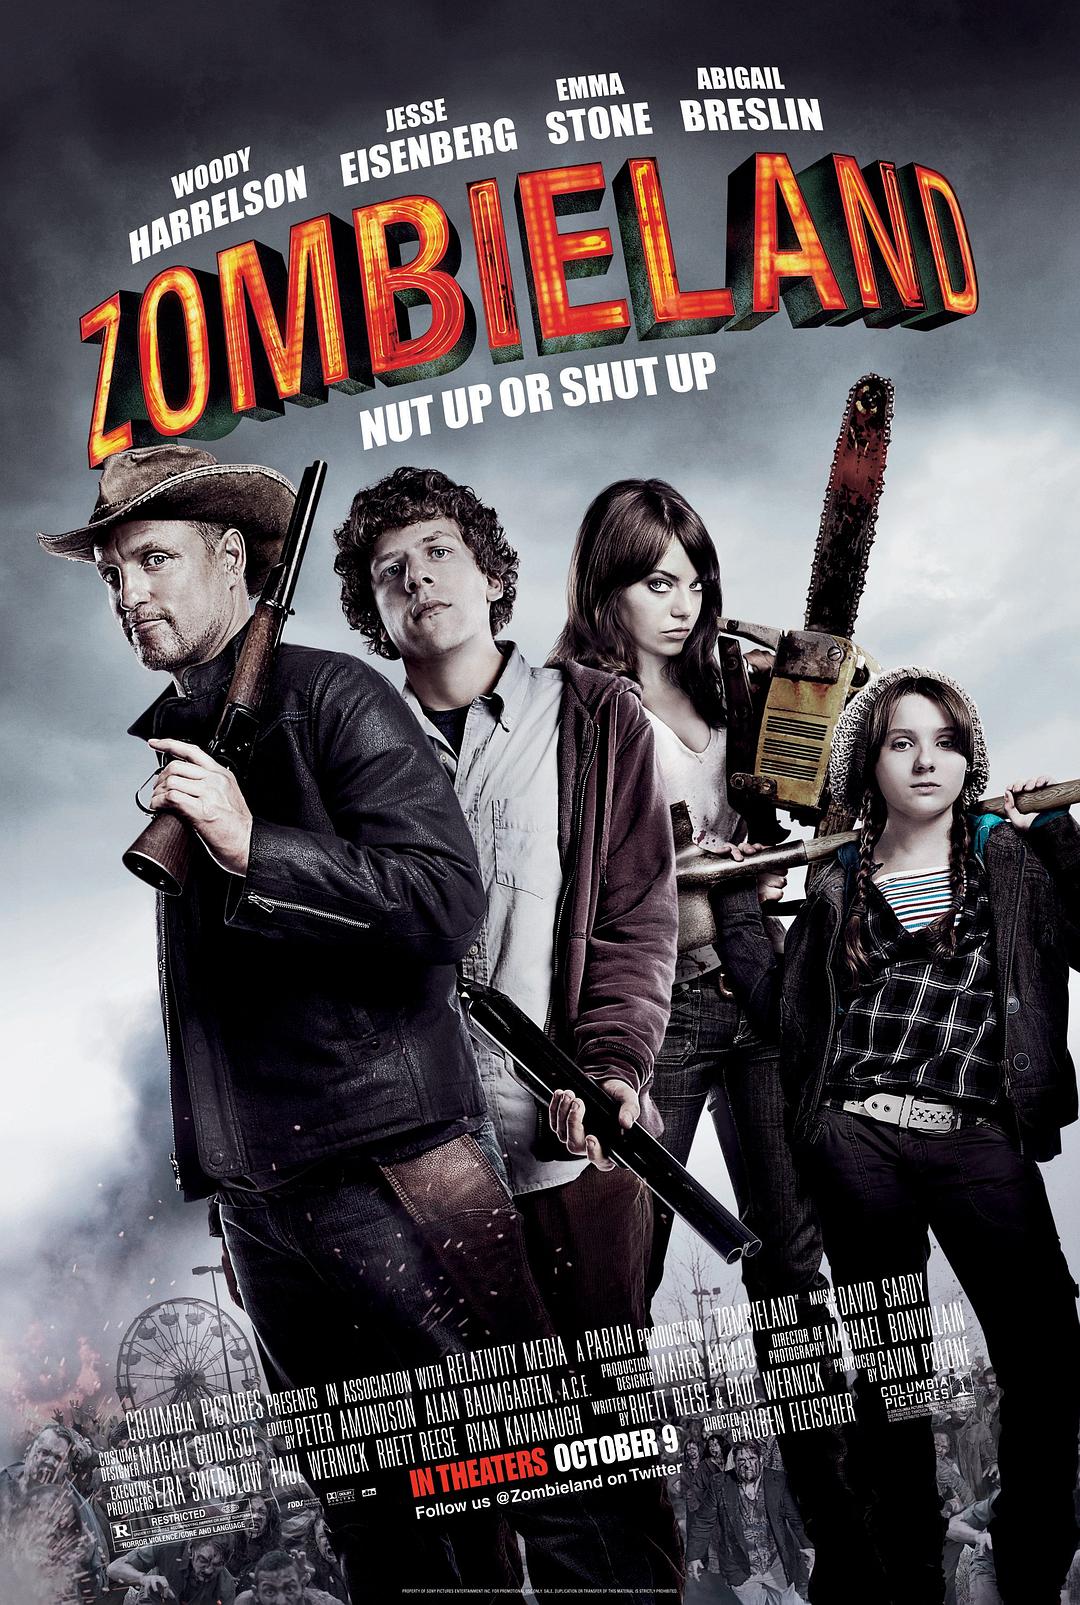 丧尸乐园.Zombieland 2009 1080p BluRay 10Bit X265 DD 5 1-Chivaman 3.18GB